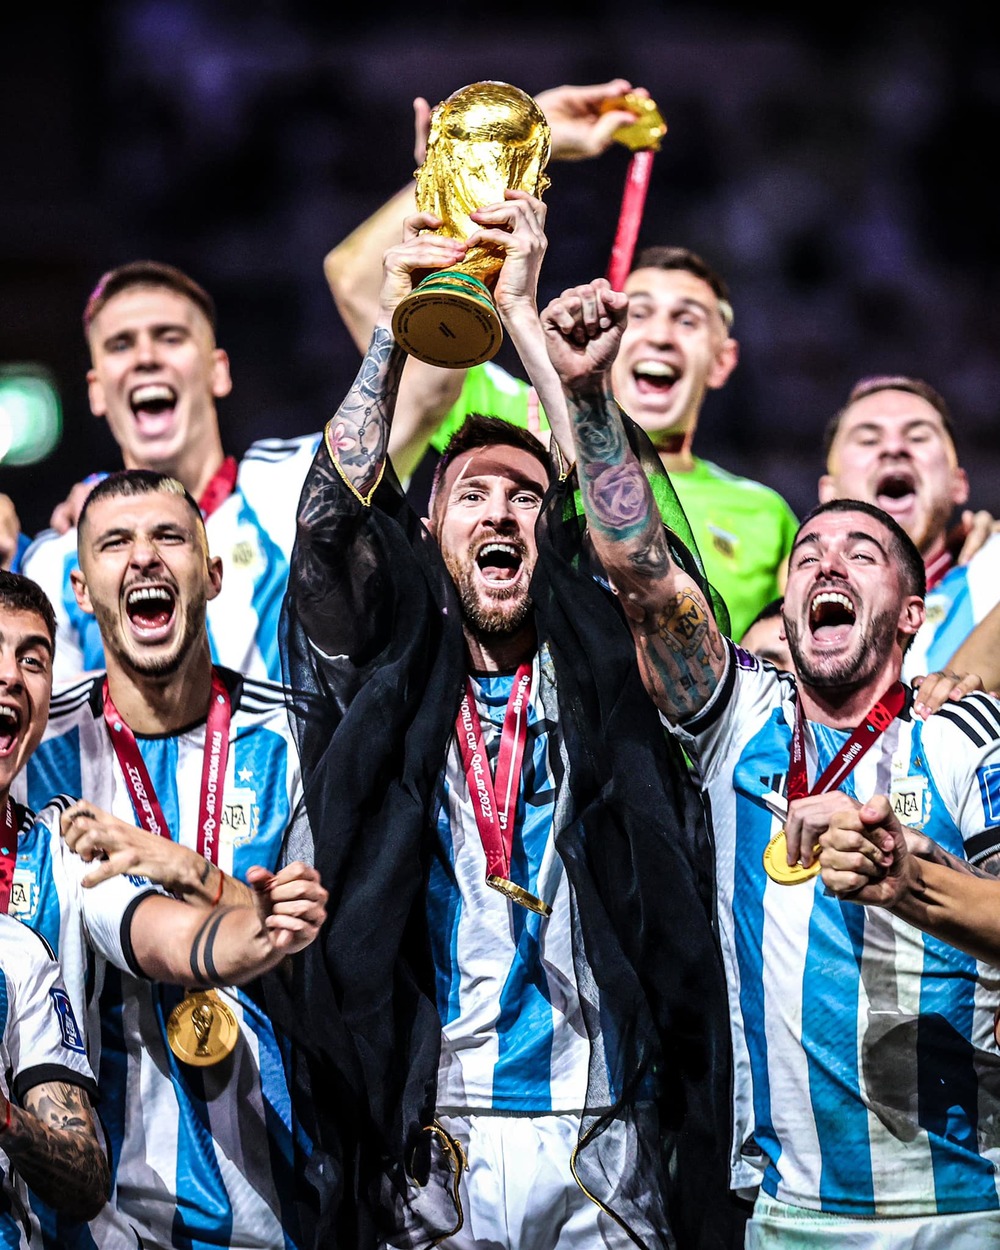 Sao Việt sẽ cùng Messi và đội tuyển Argentina tạo ra bầu không khí rộn ràng trong World Cup. Cùng theo dõi những khoảnh khắc kích thích và sự nhịp nhàng của các tuyển thủ khi họ cố gắng giành chiến thắng và giành cúp vàng. Đó là khoảnh khắc đáng chờ đợi mà không ai nên bỏ qua.